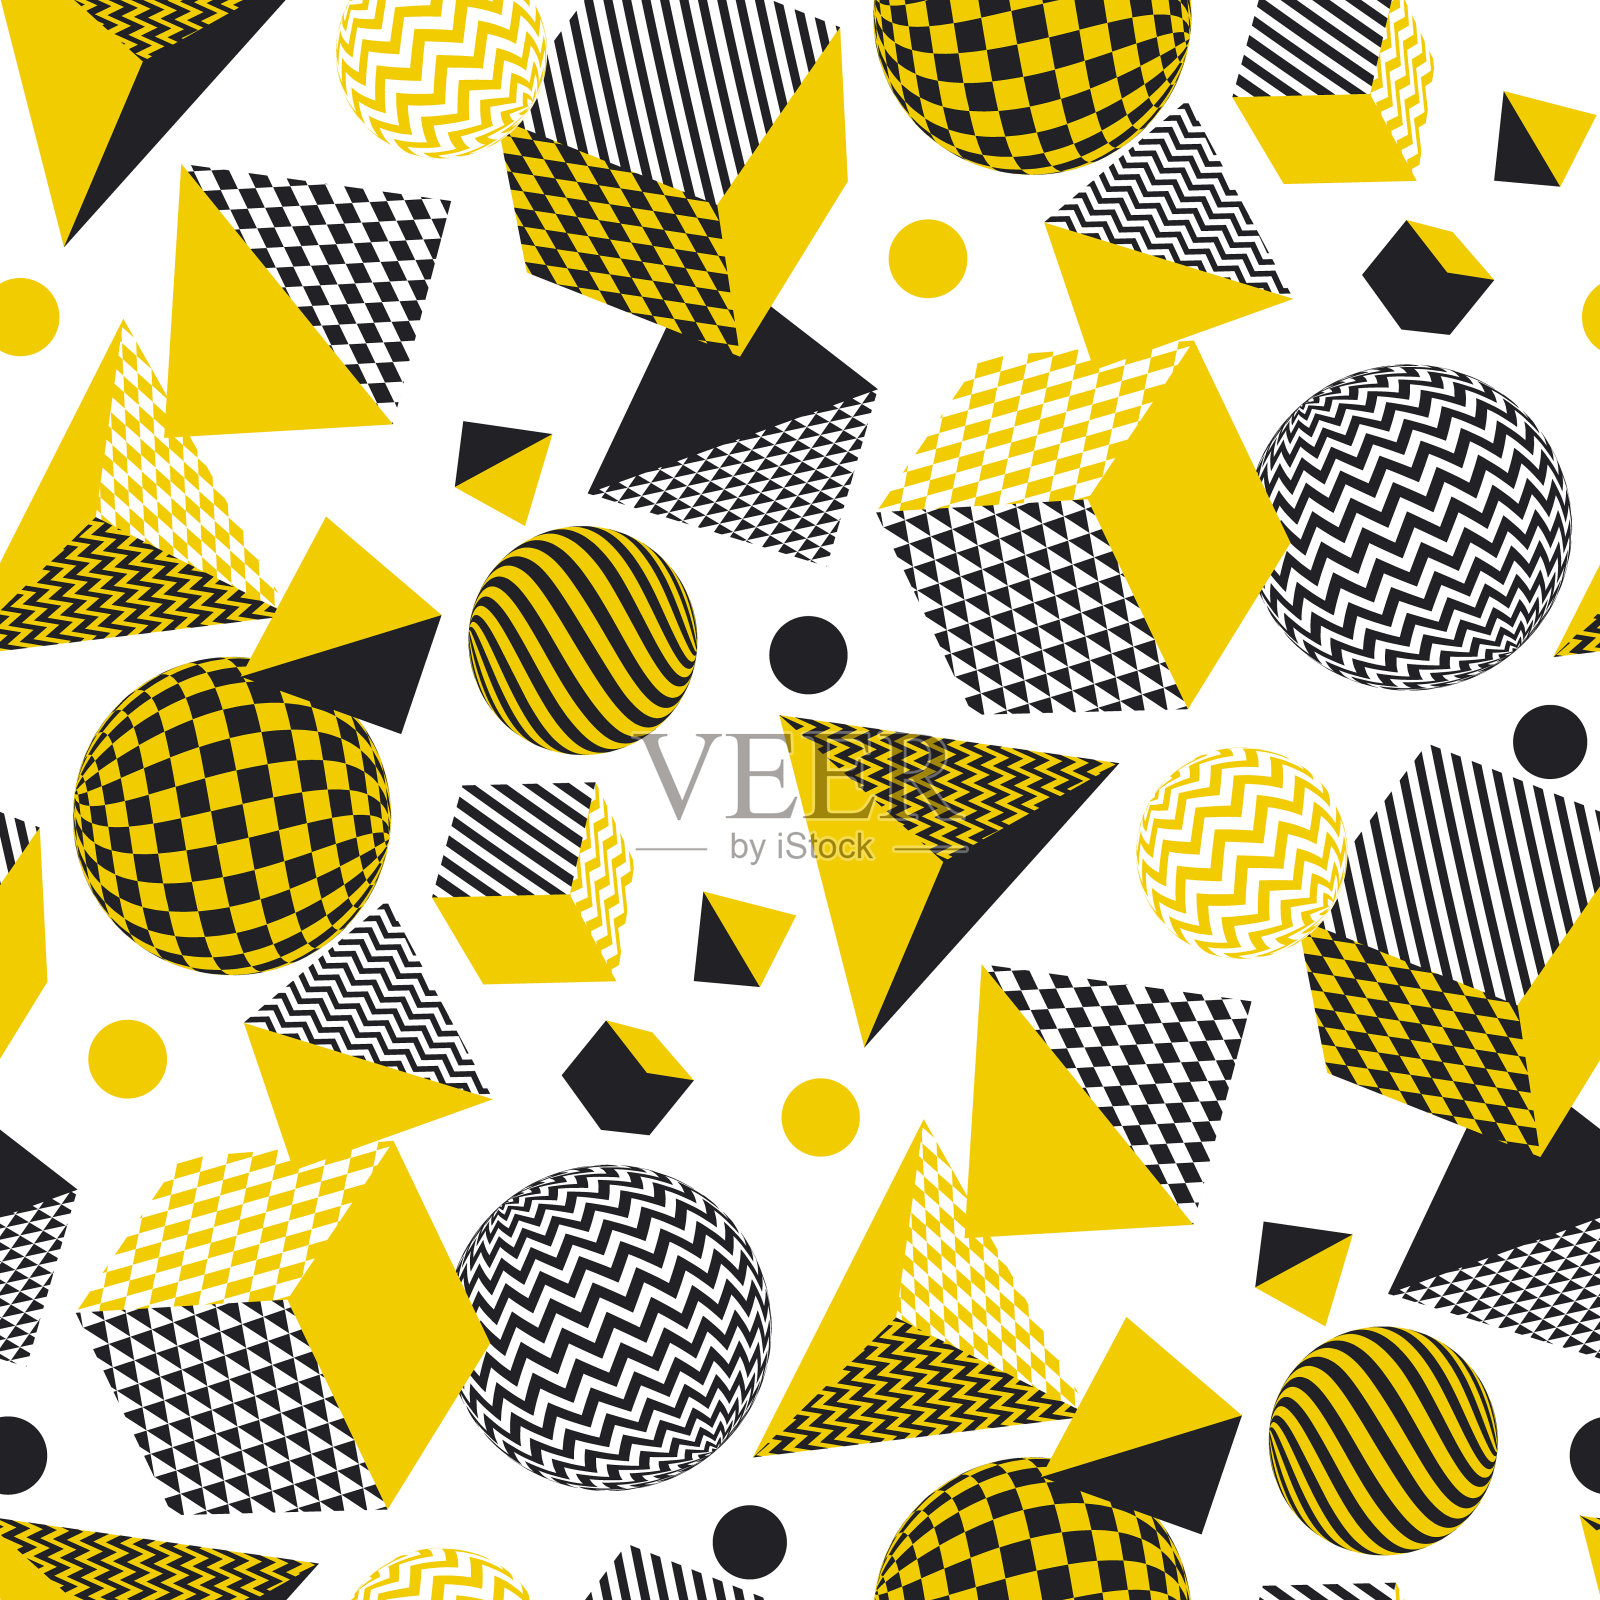 抽象的三维几何无缝图案在黄色和黑色的颜色。体积错觉几何形状可重复的主题。用于表面设计的图形元素，织物，包装纸。插画图片素材